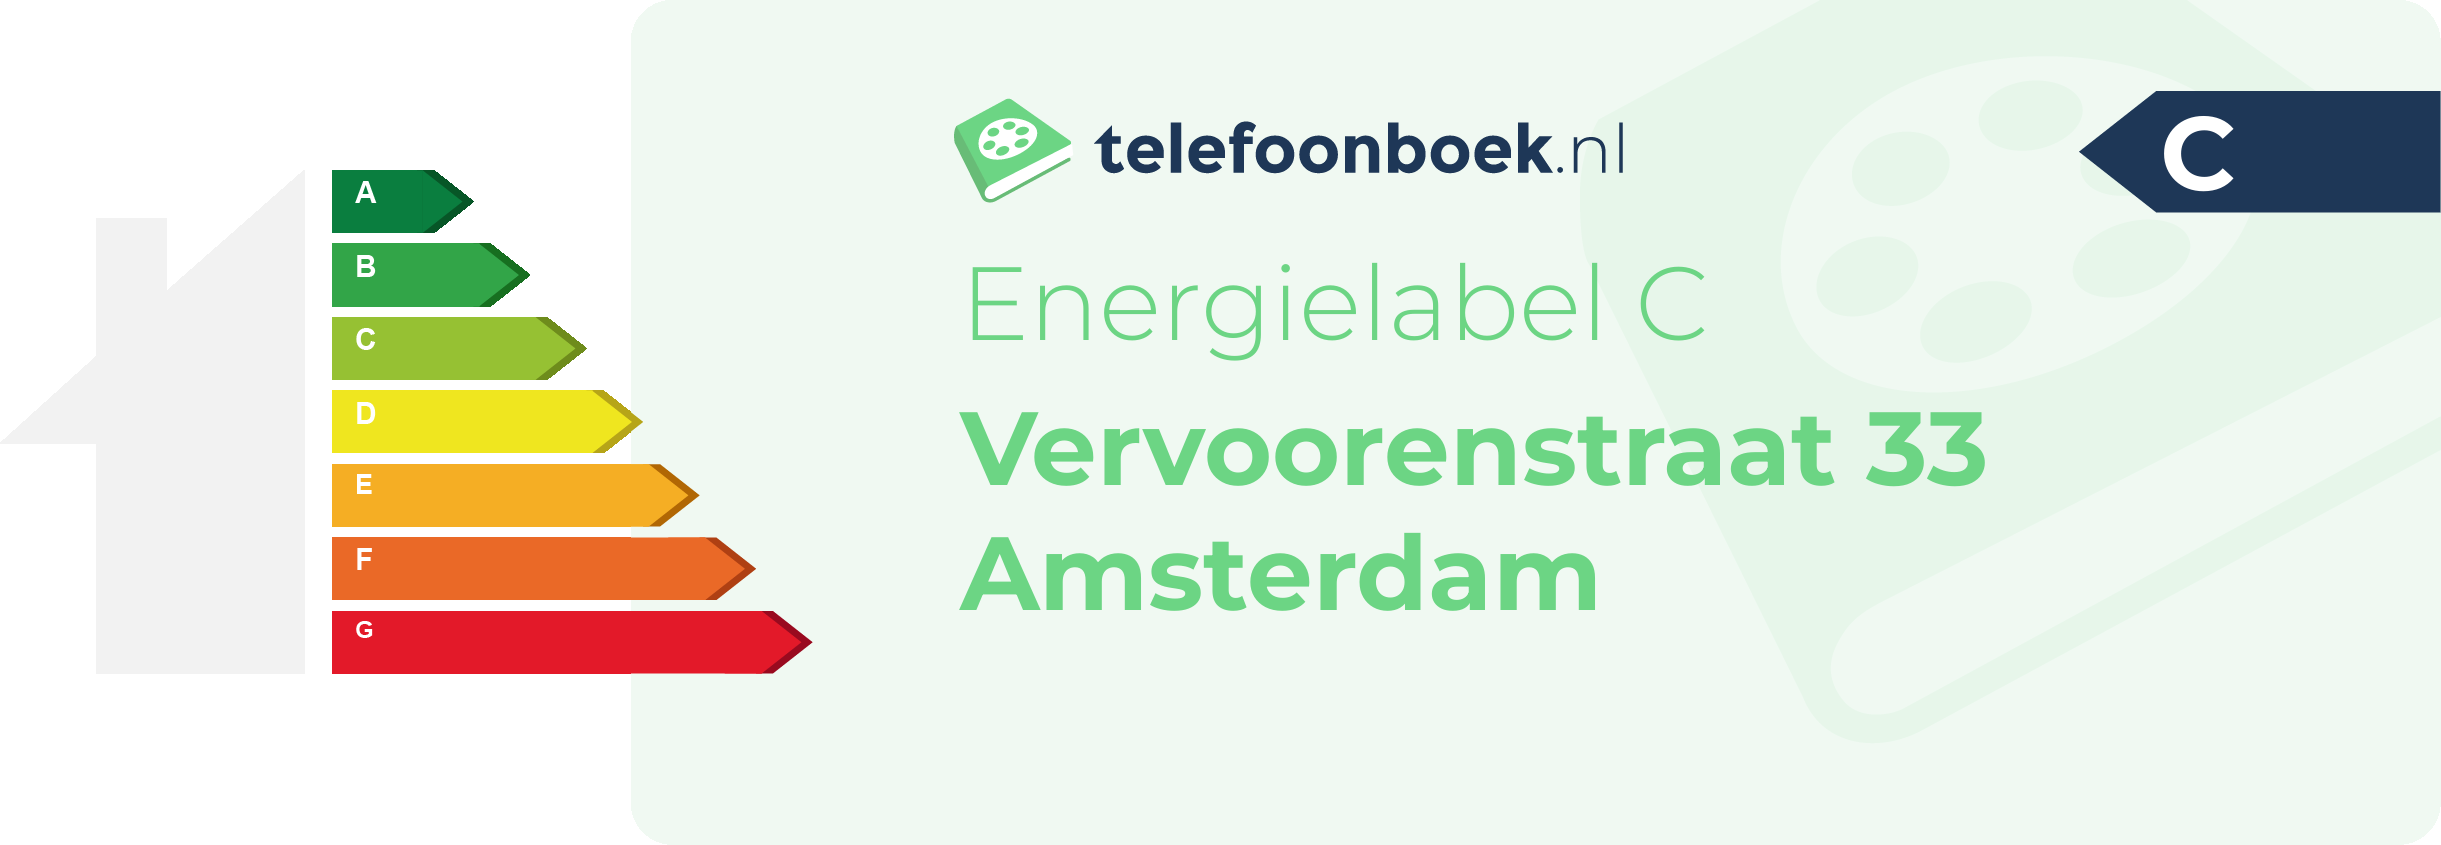 Energielabel Vervoorenstraat 33 Amsterdam